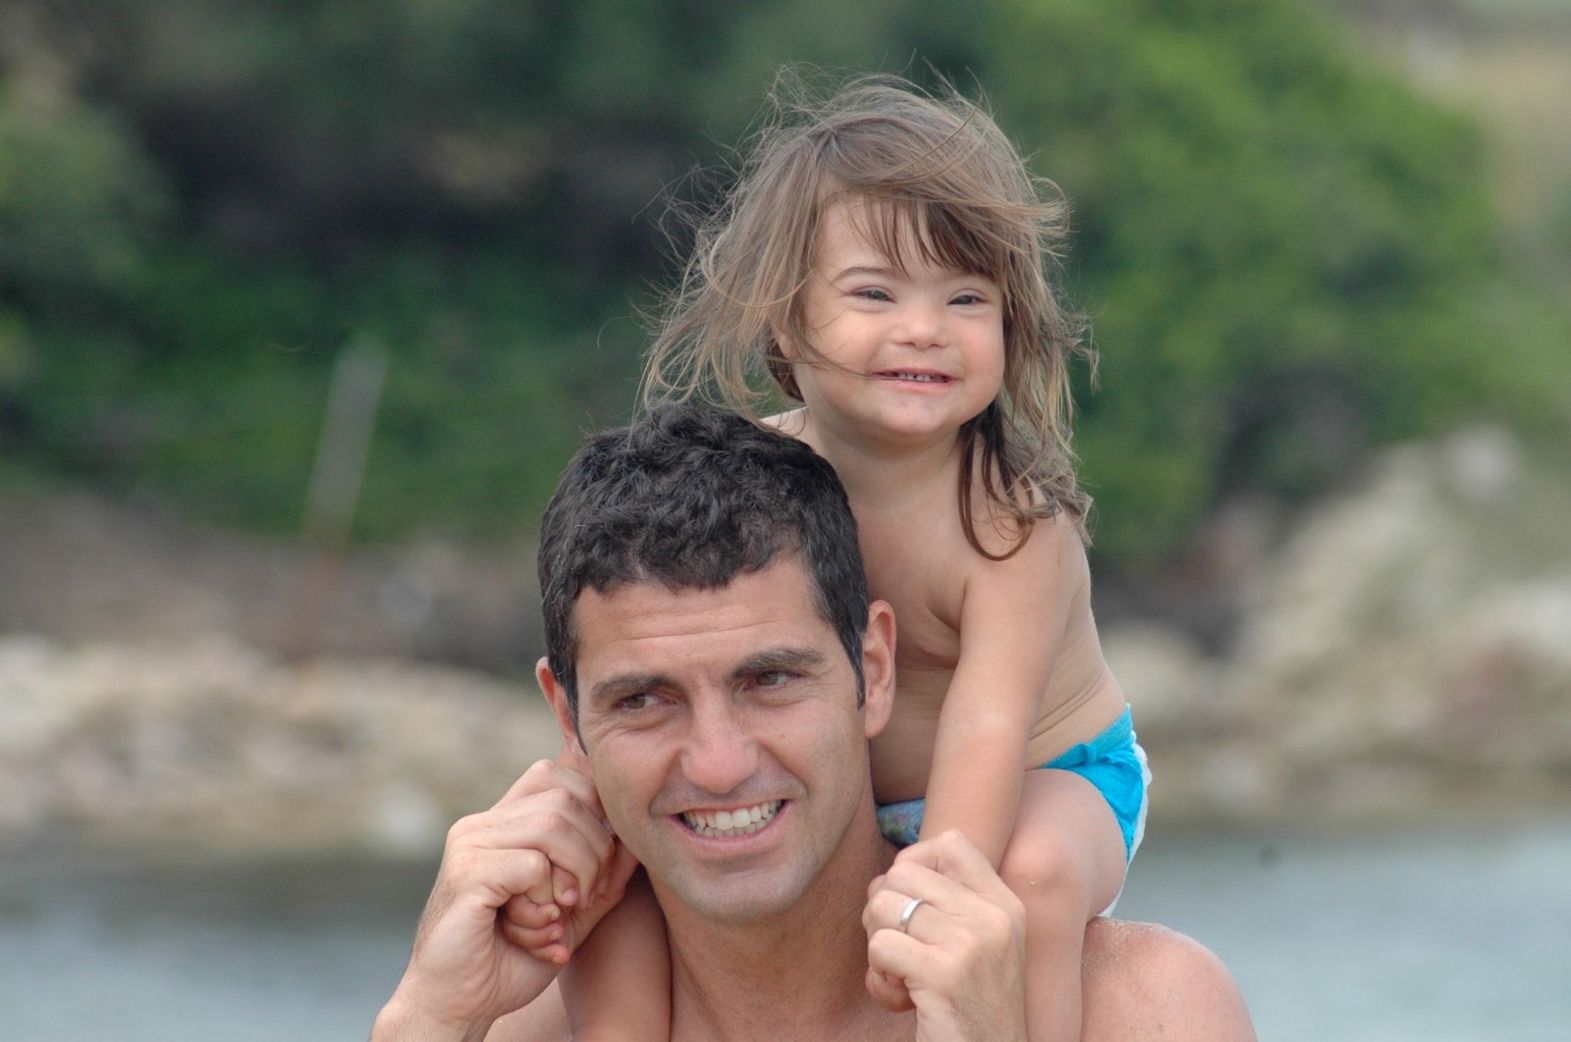 La lettera toccante di Paolo Orlandoni alla figlia con la sindrome di Down